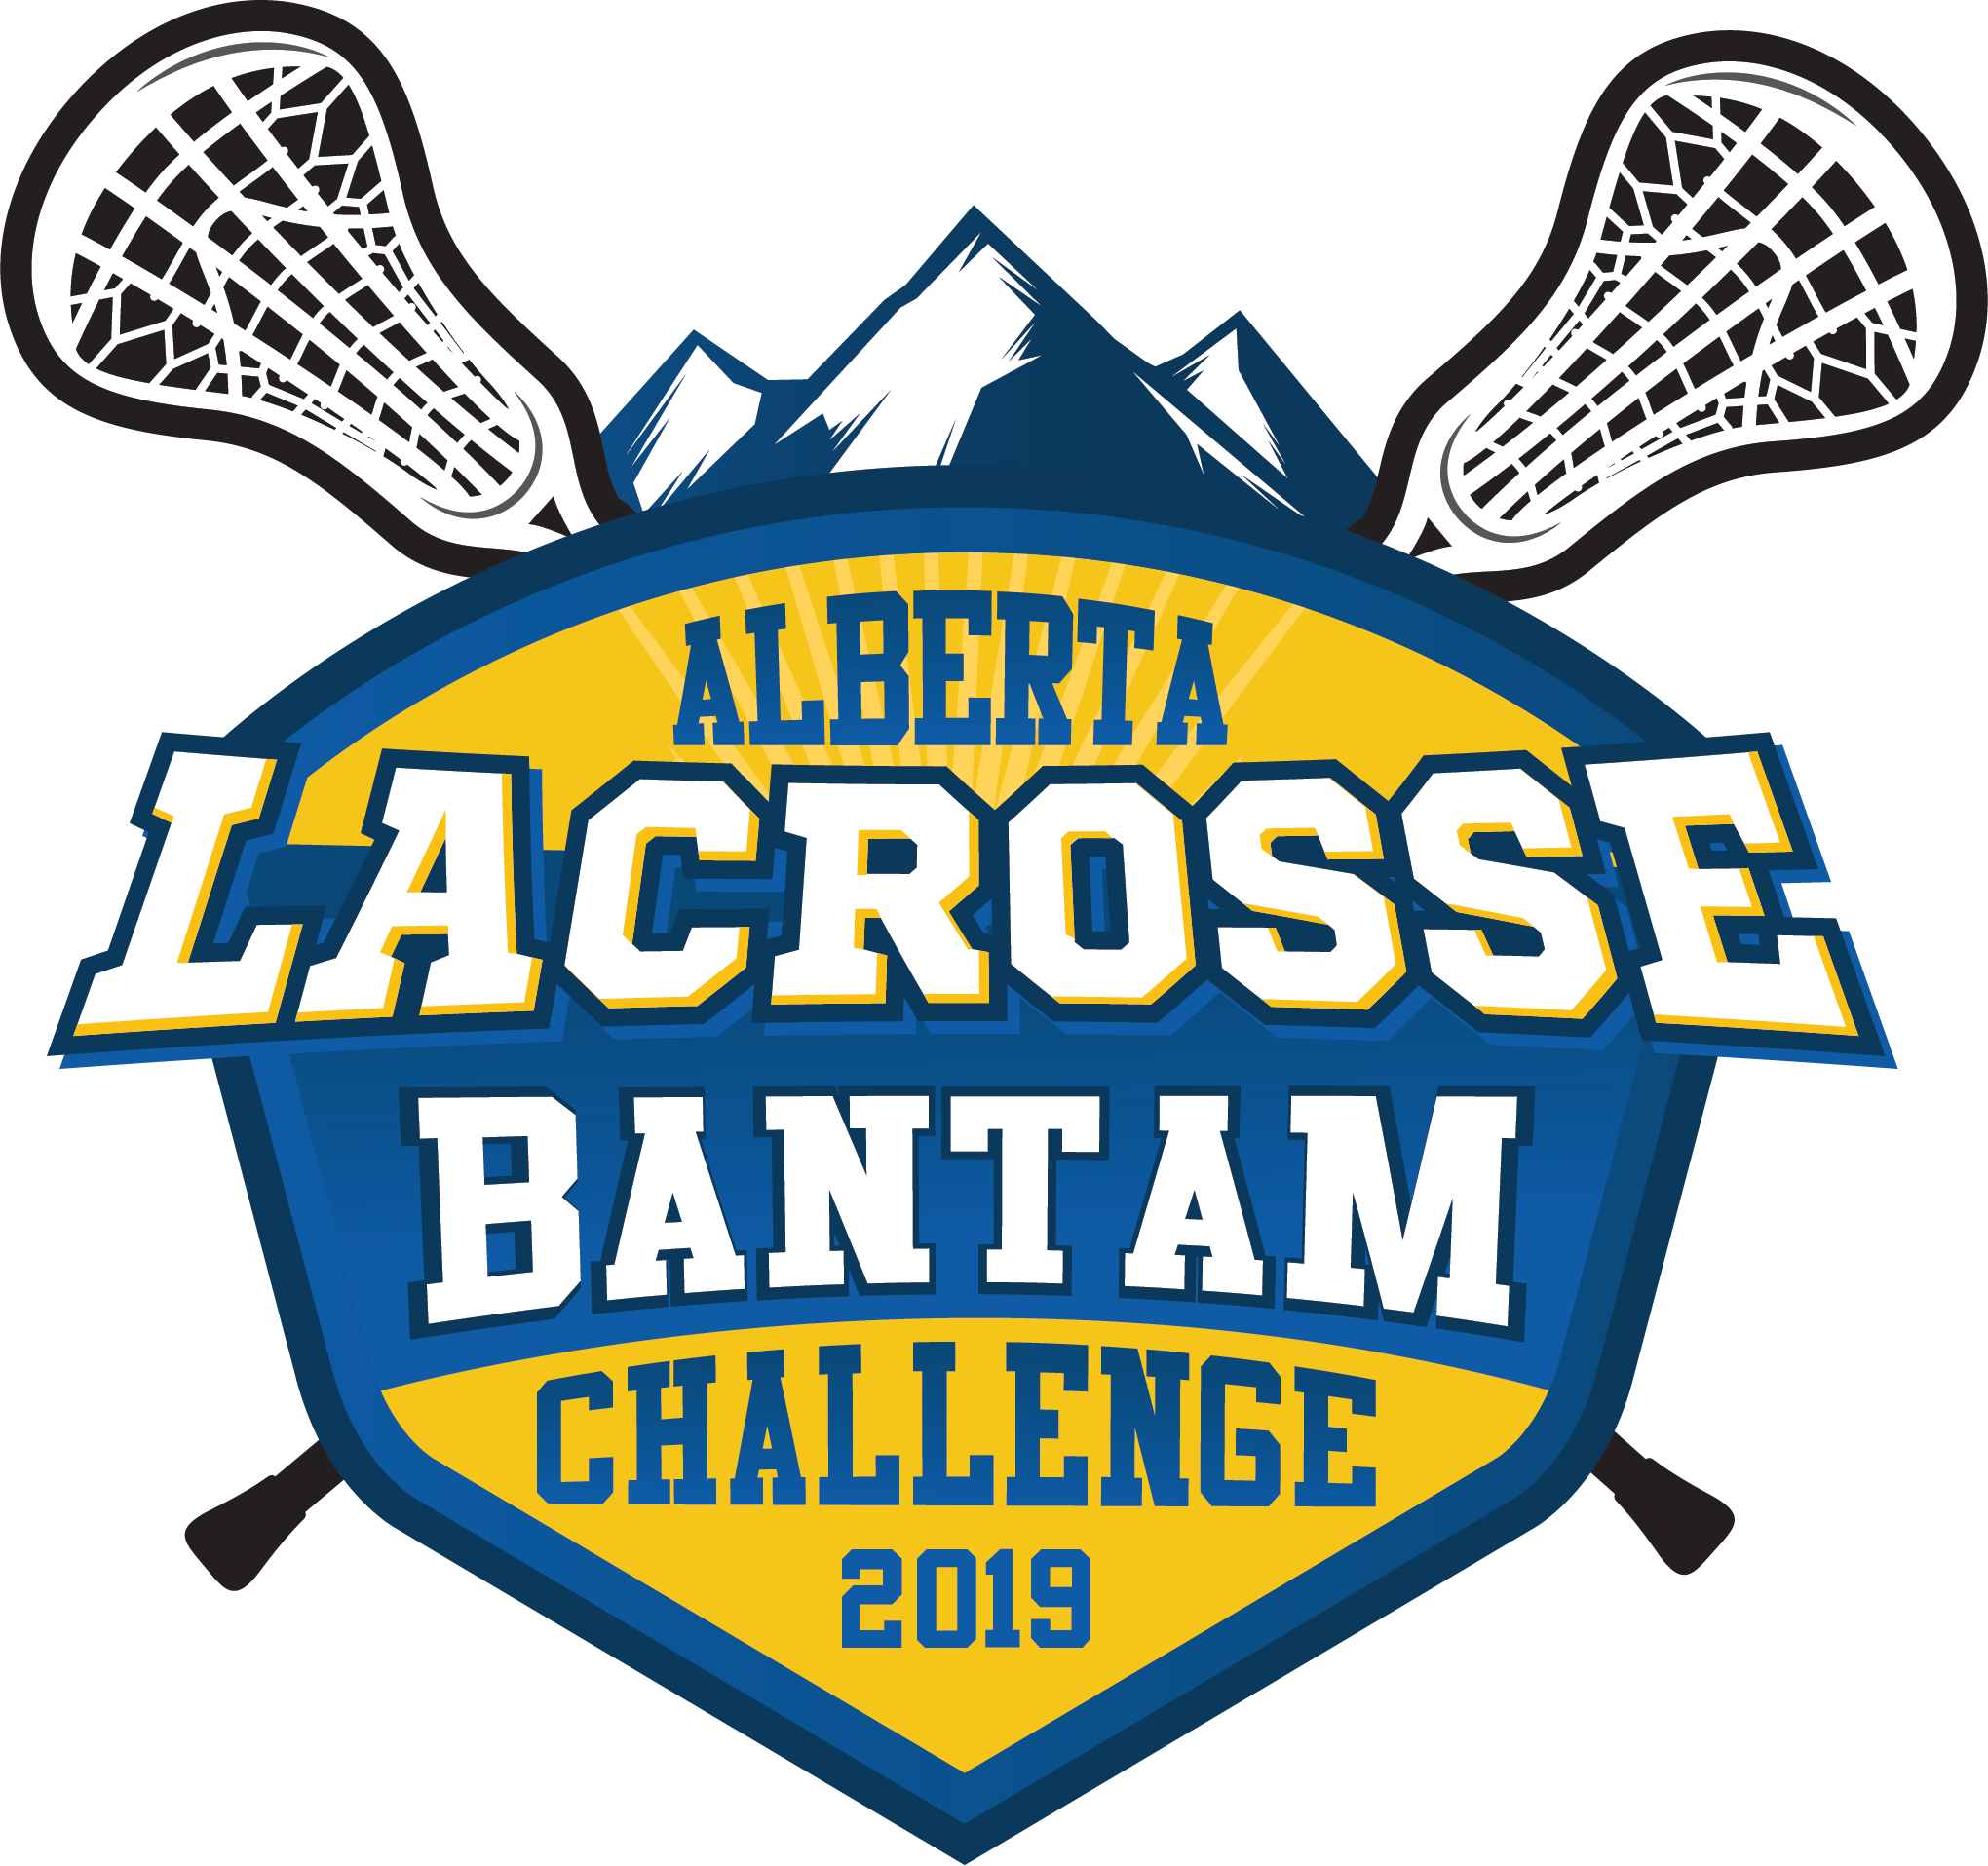 2019 Alberta Lacrosse Bantam Challenge - Field Lacrosse (2040x1915)